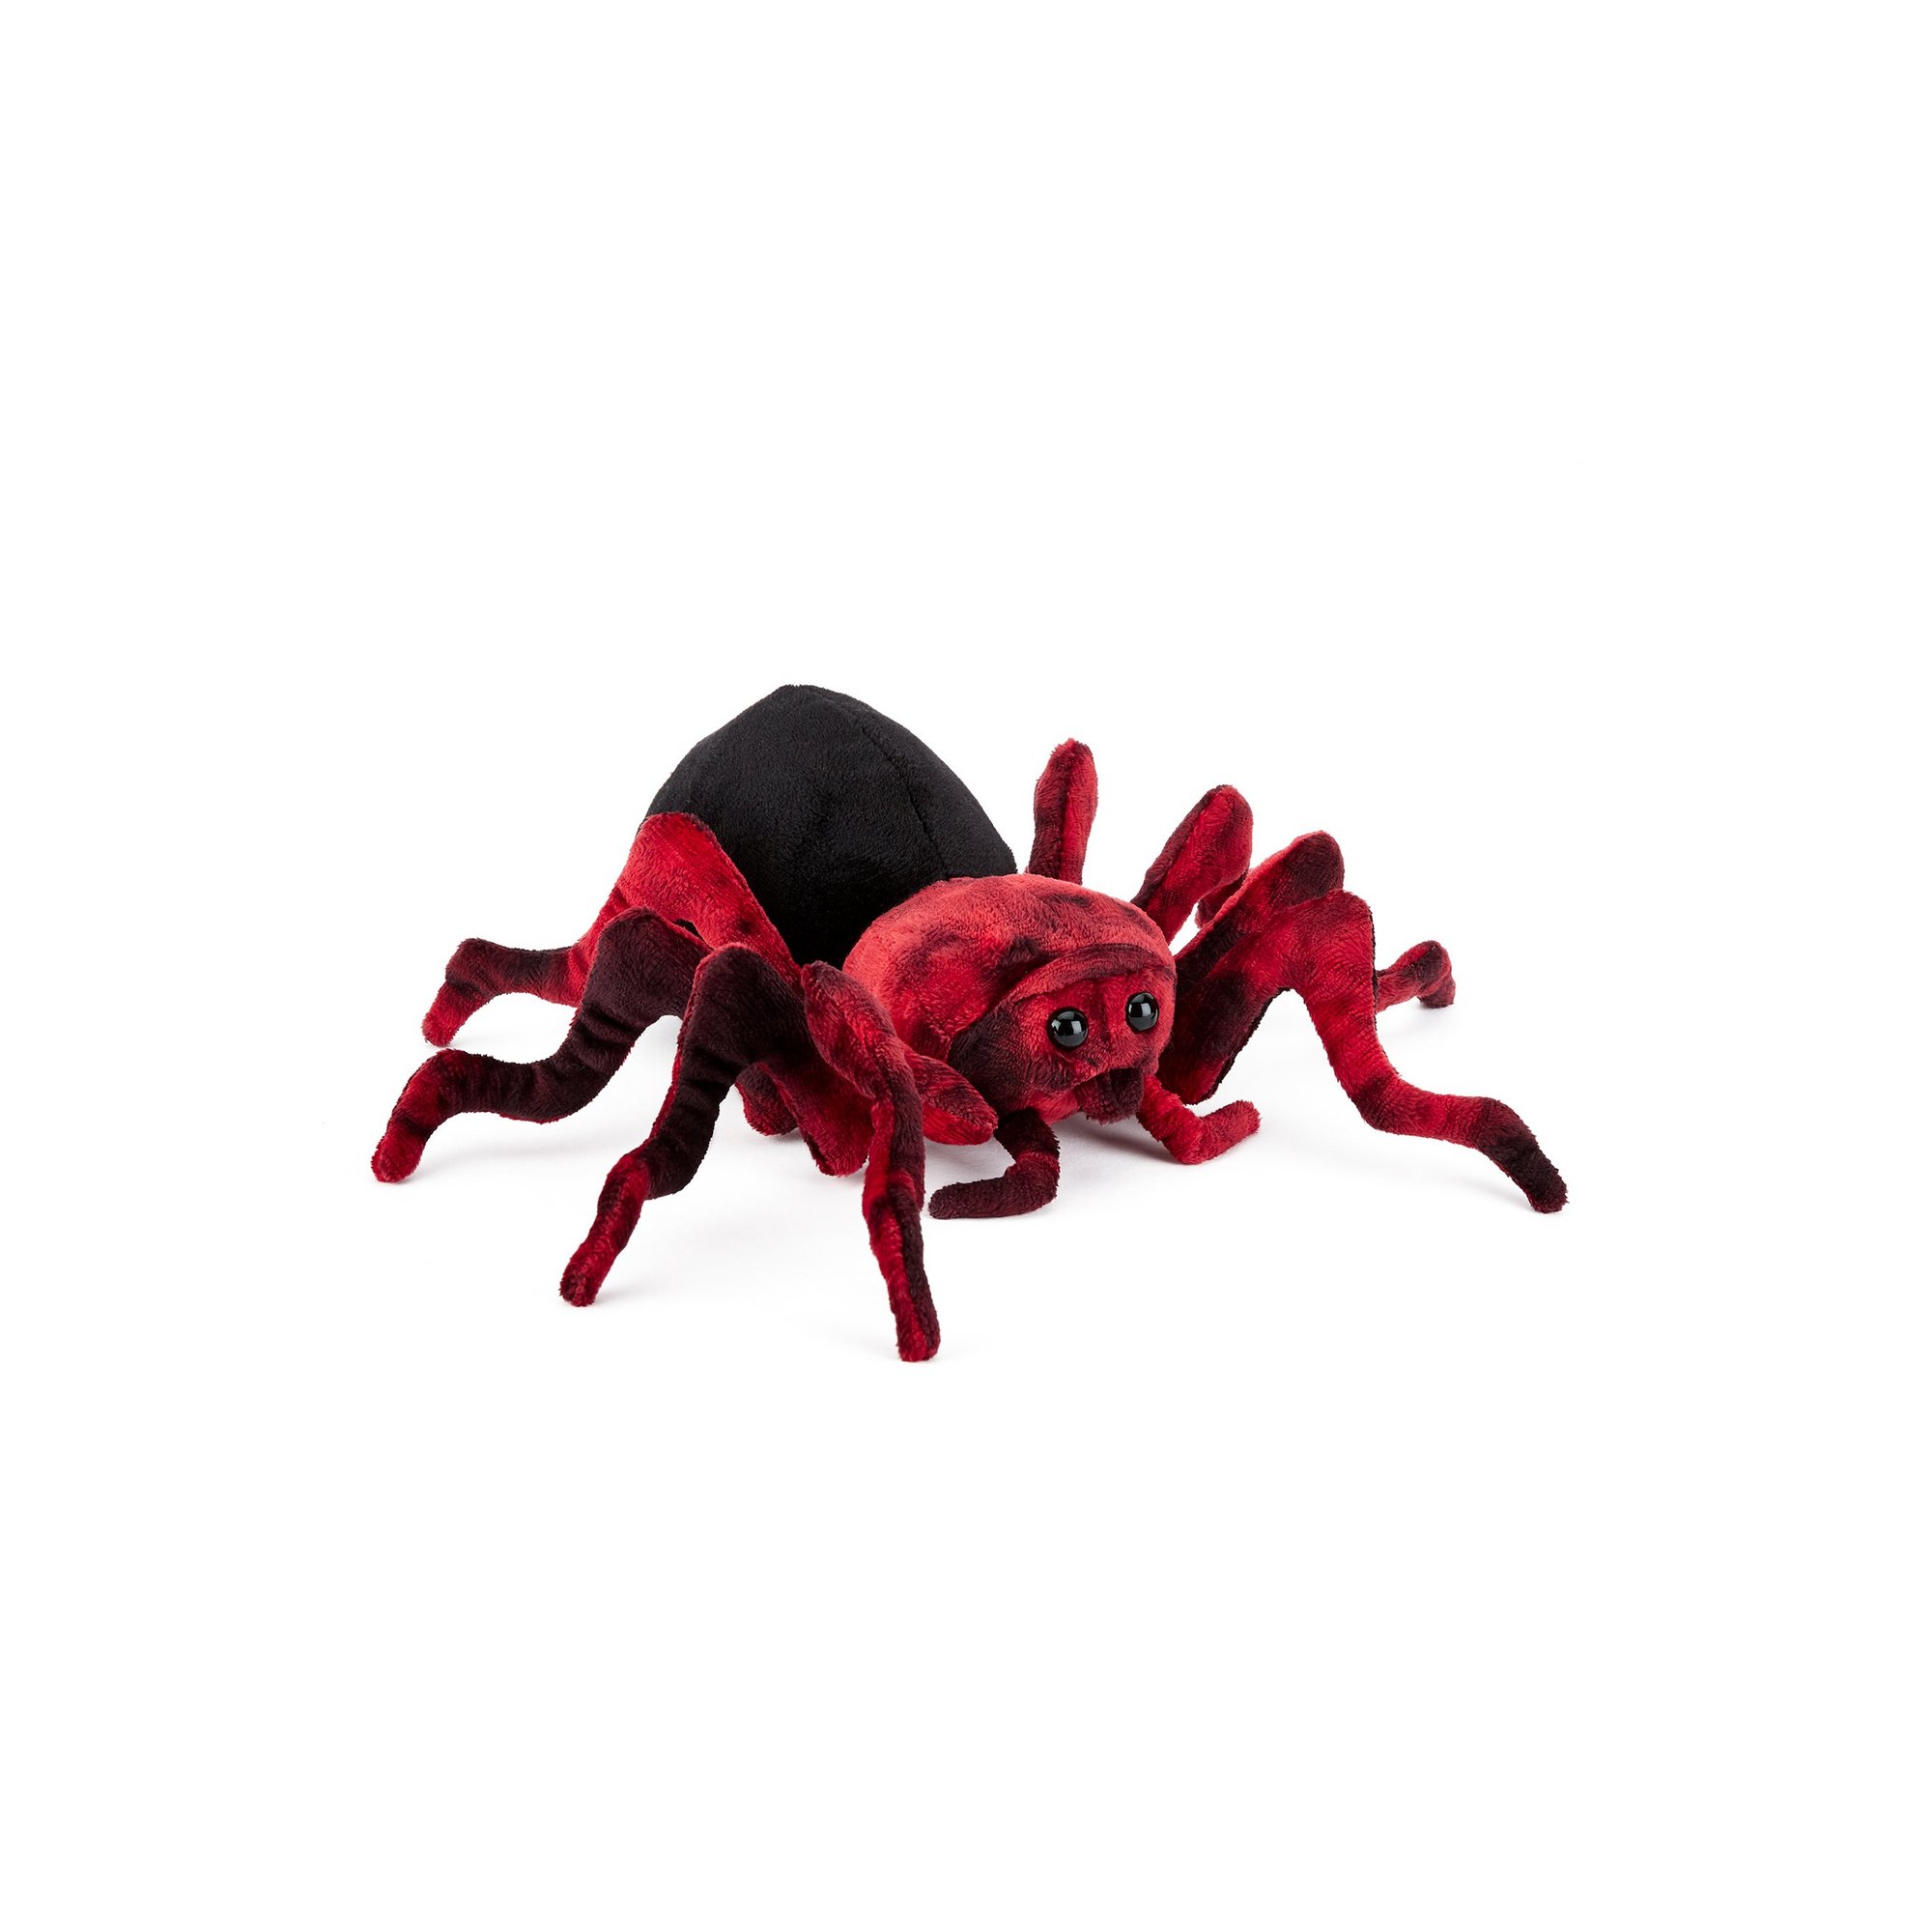 Zappi Black Spider 10.5 Inch Plush Soft Toy